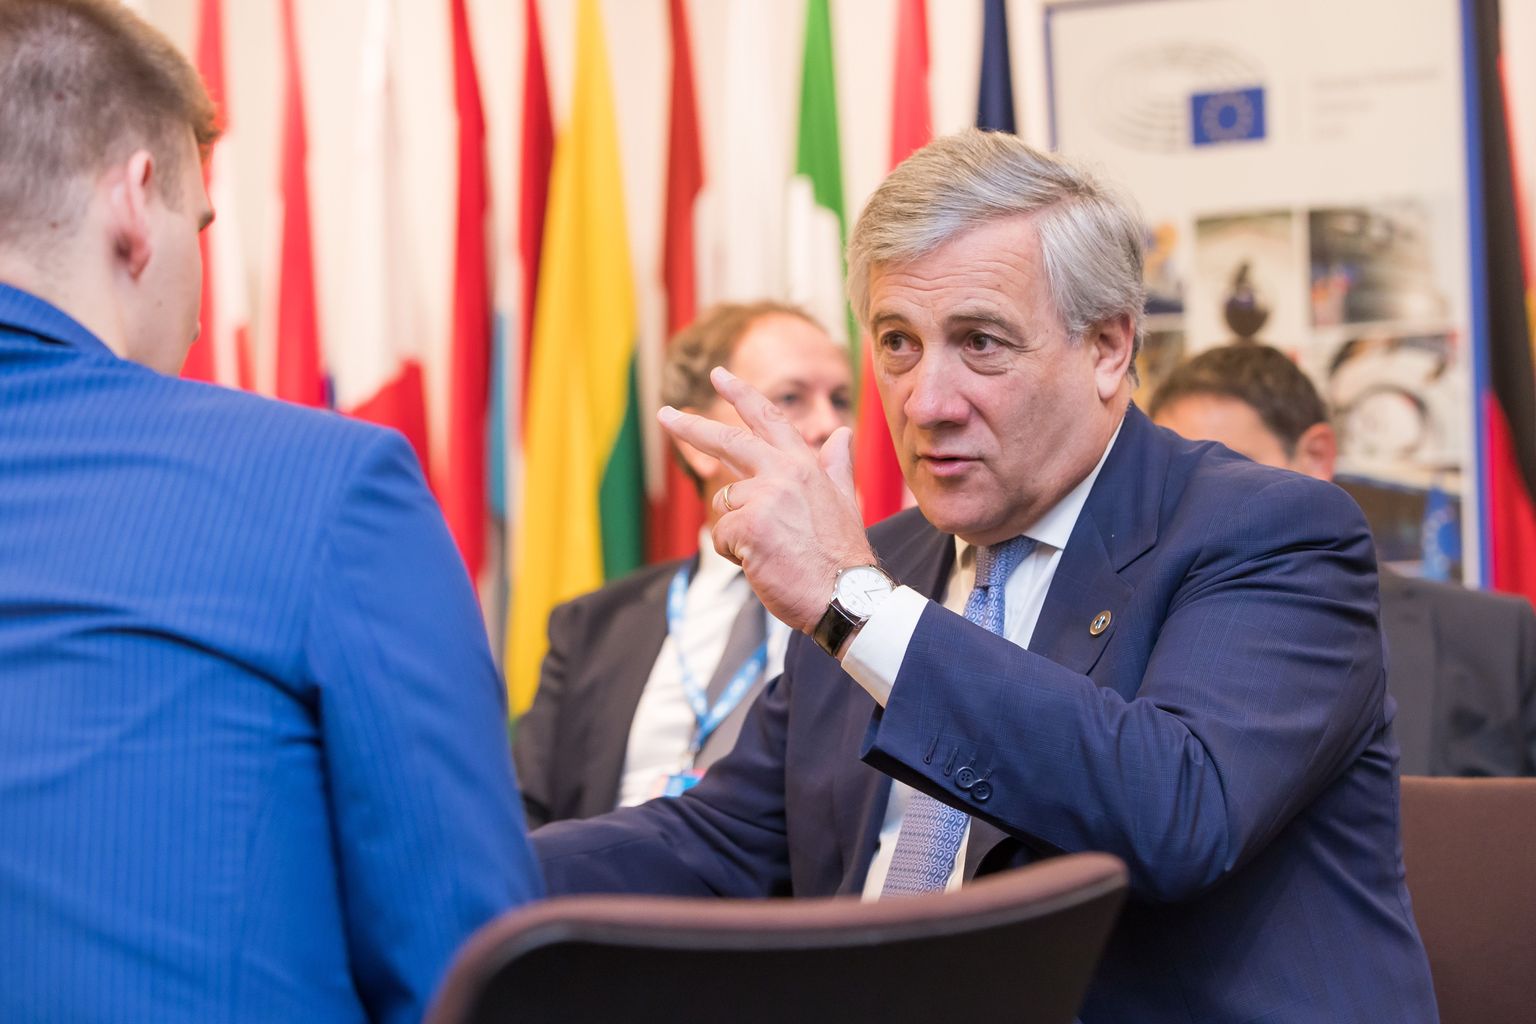 Euroopa Parlamendi president Antonio Tajani on veendumusel, et Euroopa Liit vajab mängujuhtideks suurriike Saksamaad, Prantsusmaad, Itaaliat ja Hispaaniat ning väiksemad riigid võiksid katsetada juhirolle mõnes kitsamas valdkonnas.